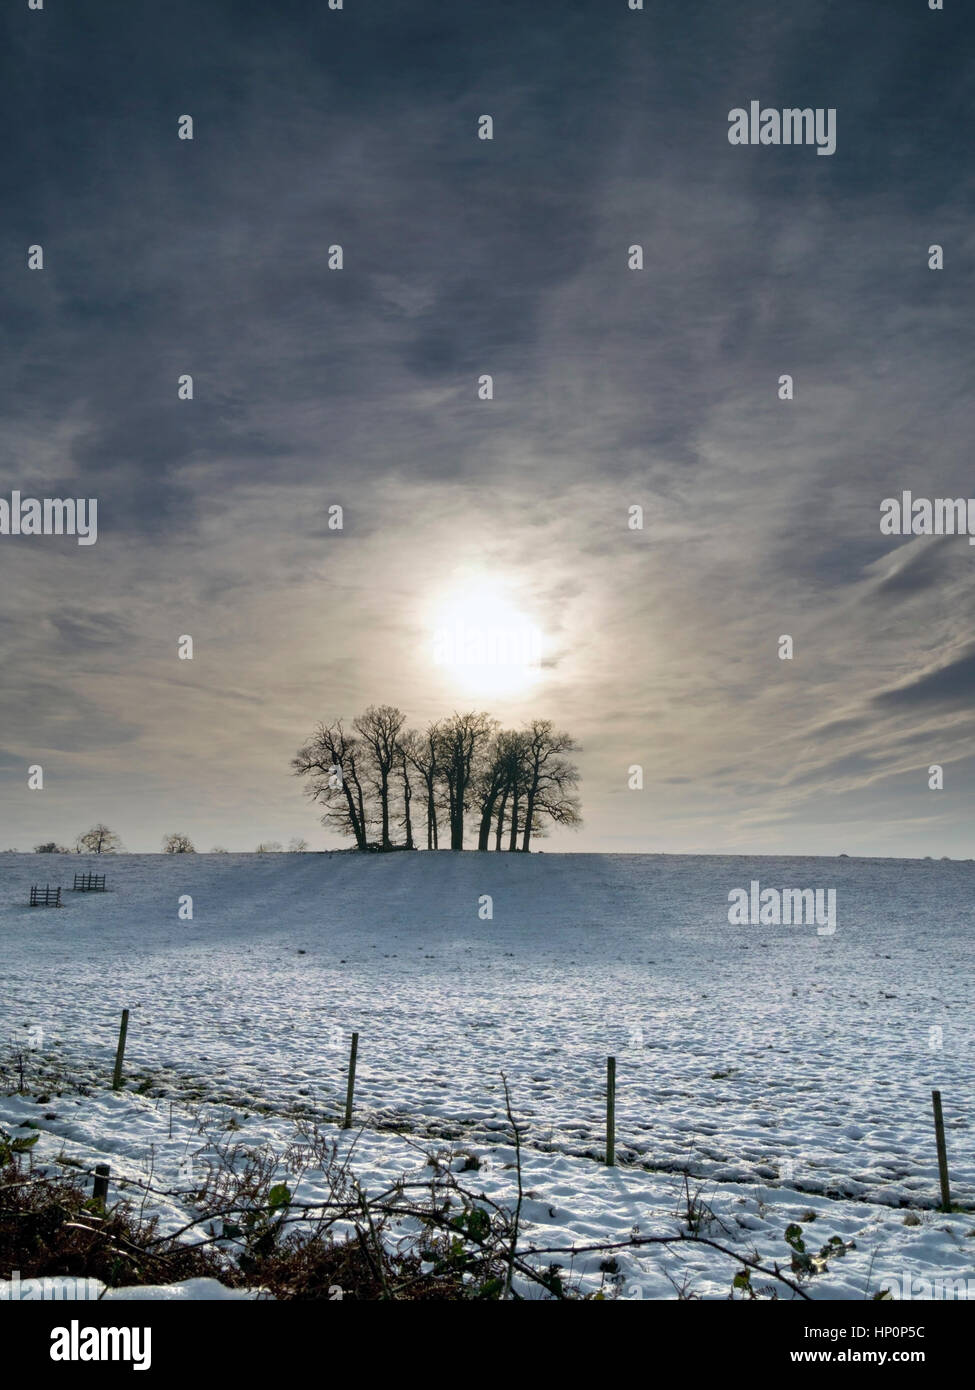 Soleil d'hiver faible et dramatique ciel derrière bosquet d'arbres dans les champs couverts de neige, Derbyshire, Angleterre, Royaume-Uni. Banque D'Images